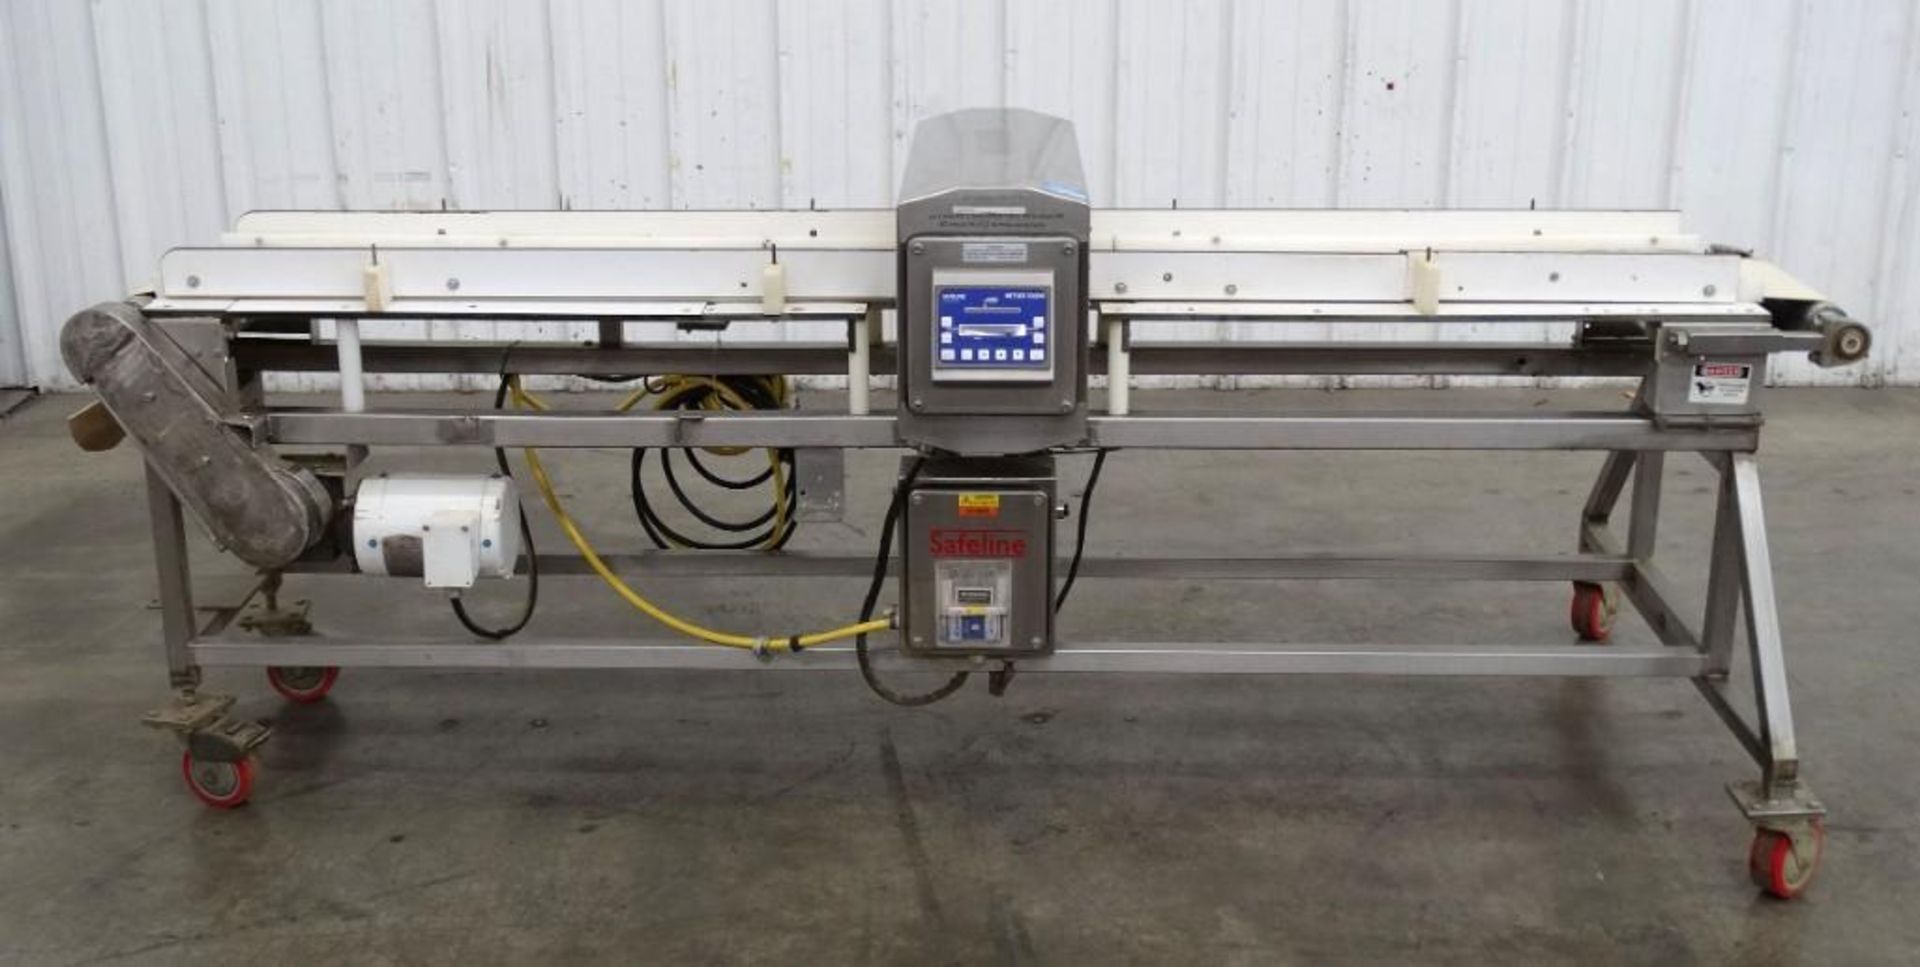 Safeline Metal Detector with Conveyor 3" x 11"